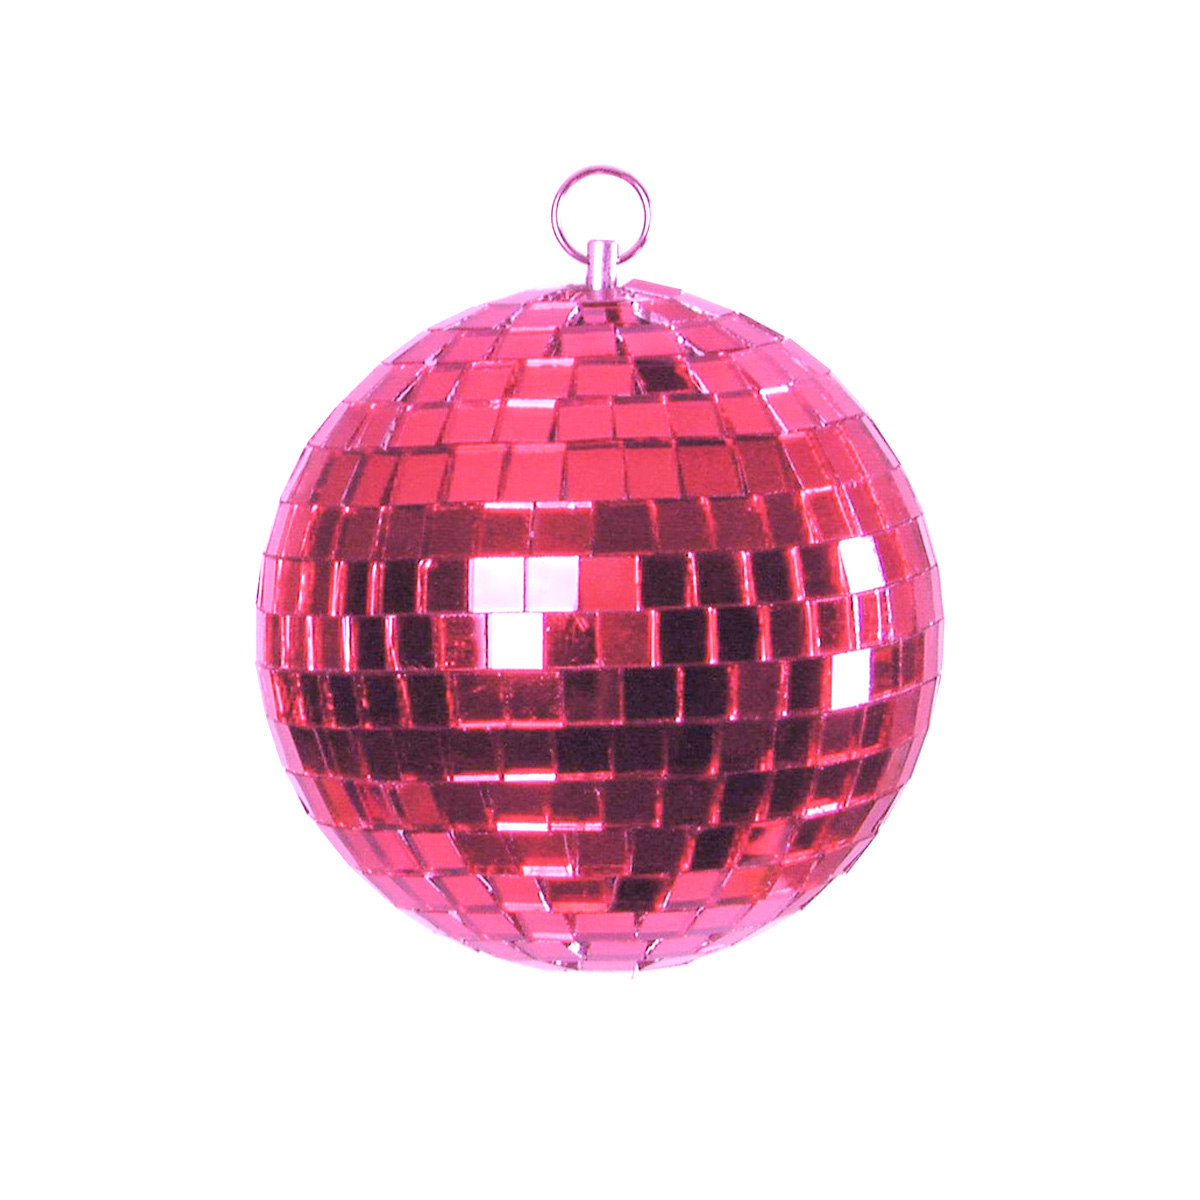 Spiegelkugel 20cm farbig pink rosa- Diskokugel (Discokugel) zur Dekoration und Party- Echtglas - mirrorball pink rose purple